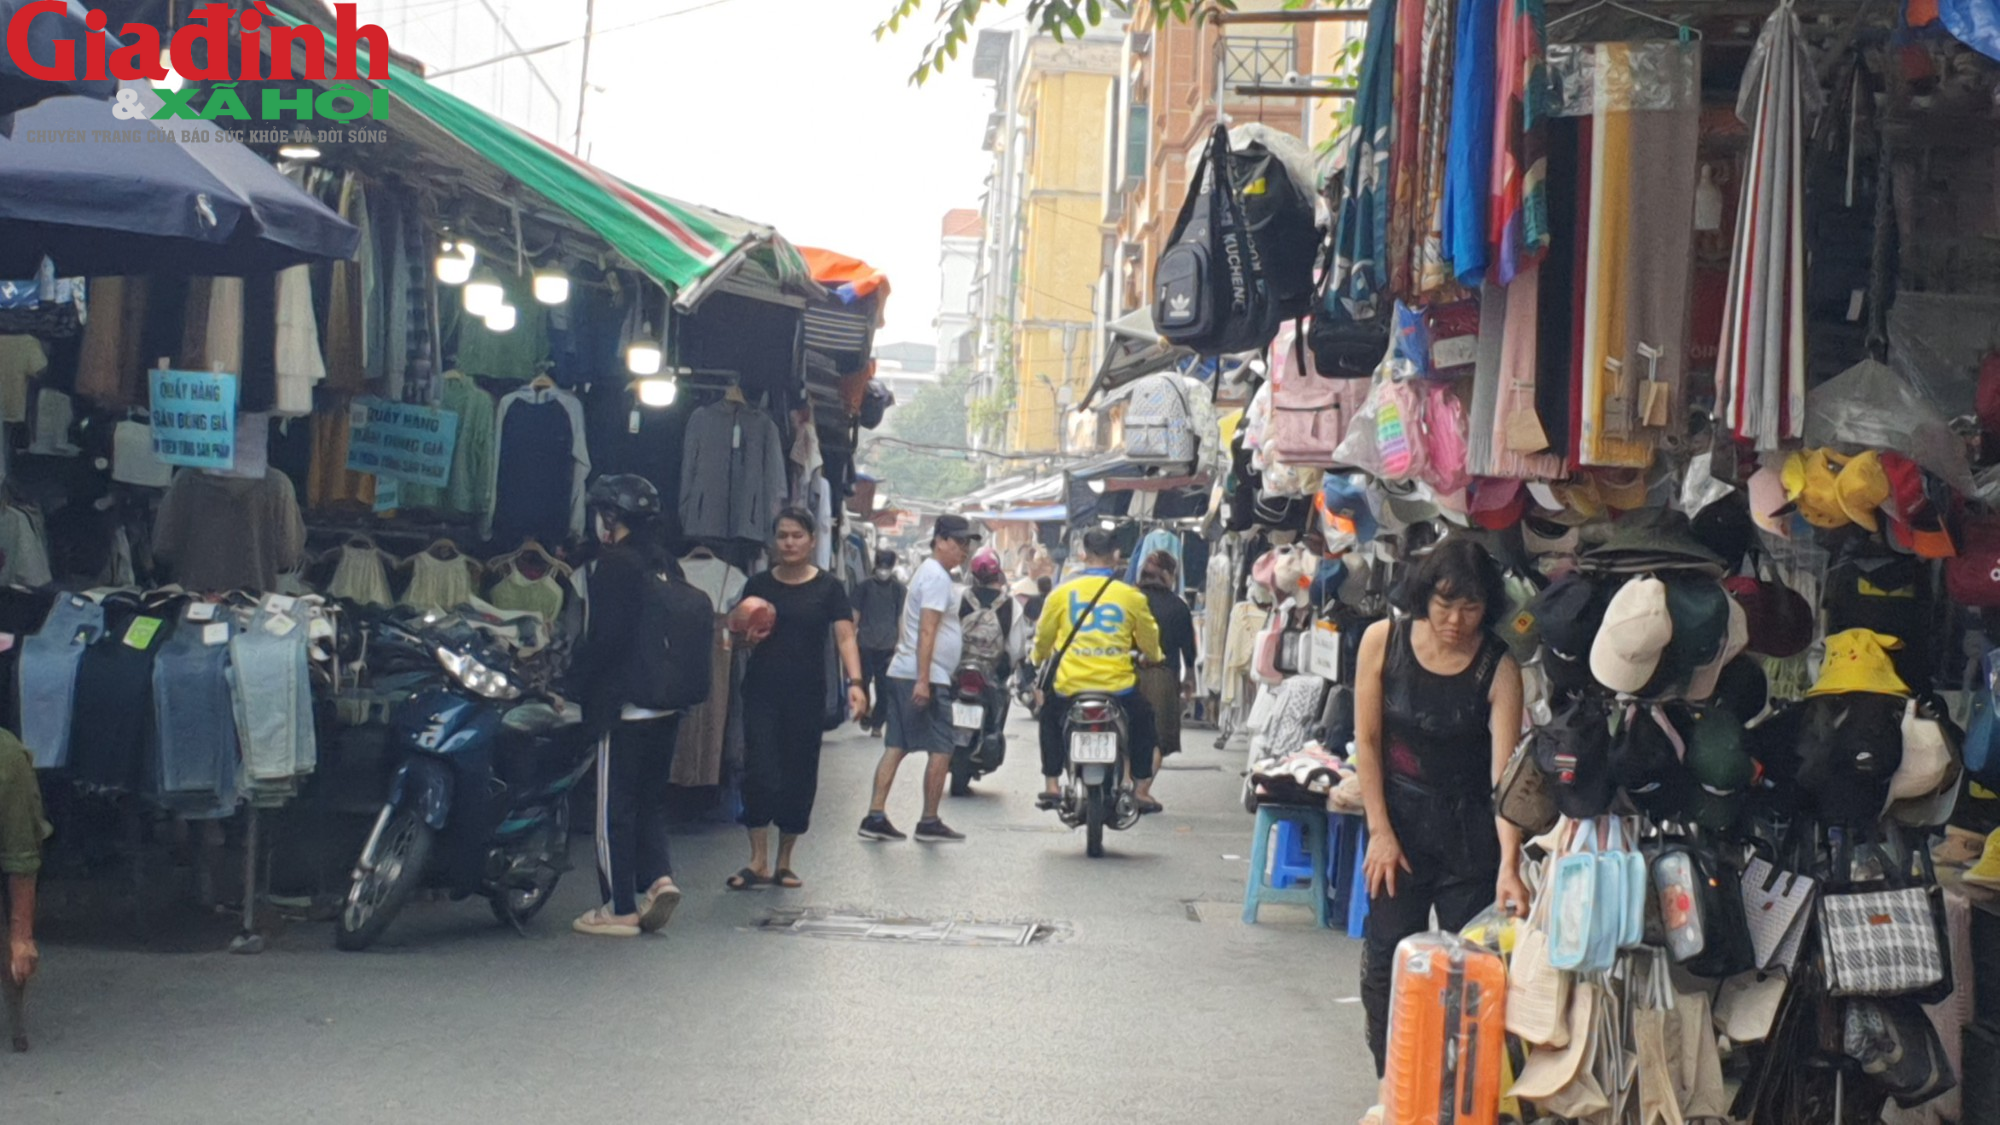 Hà Nội: Đường Phan Văn Trường đang bị chiếm dụng bởi ‘thiên đường mua sắm’ giới trẻ  - Ảnh 14.